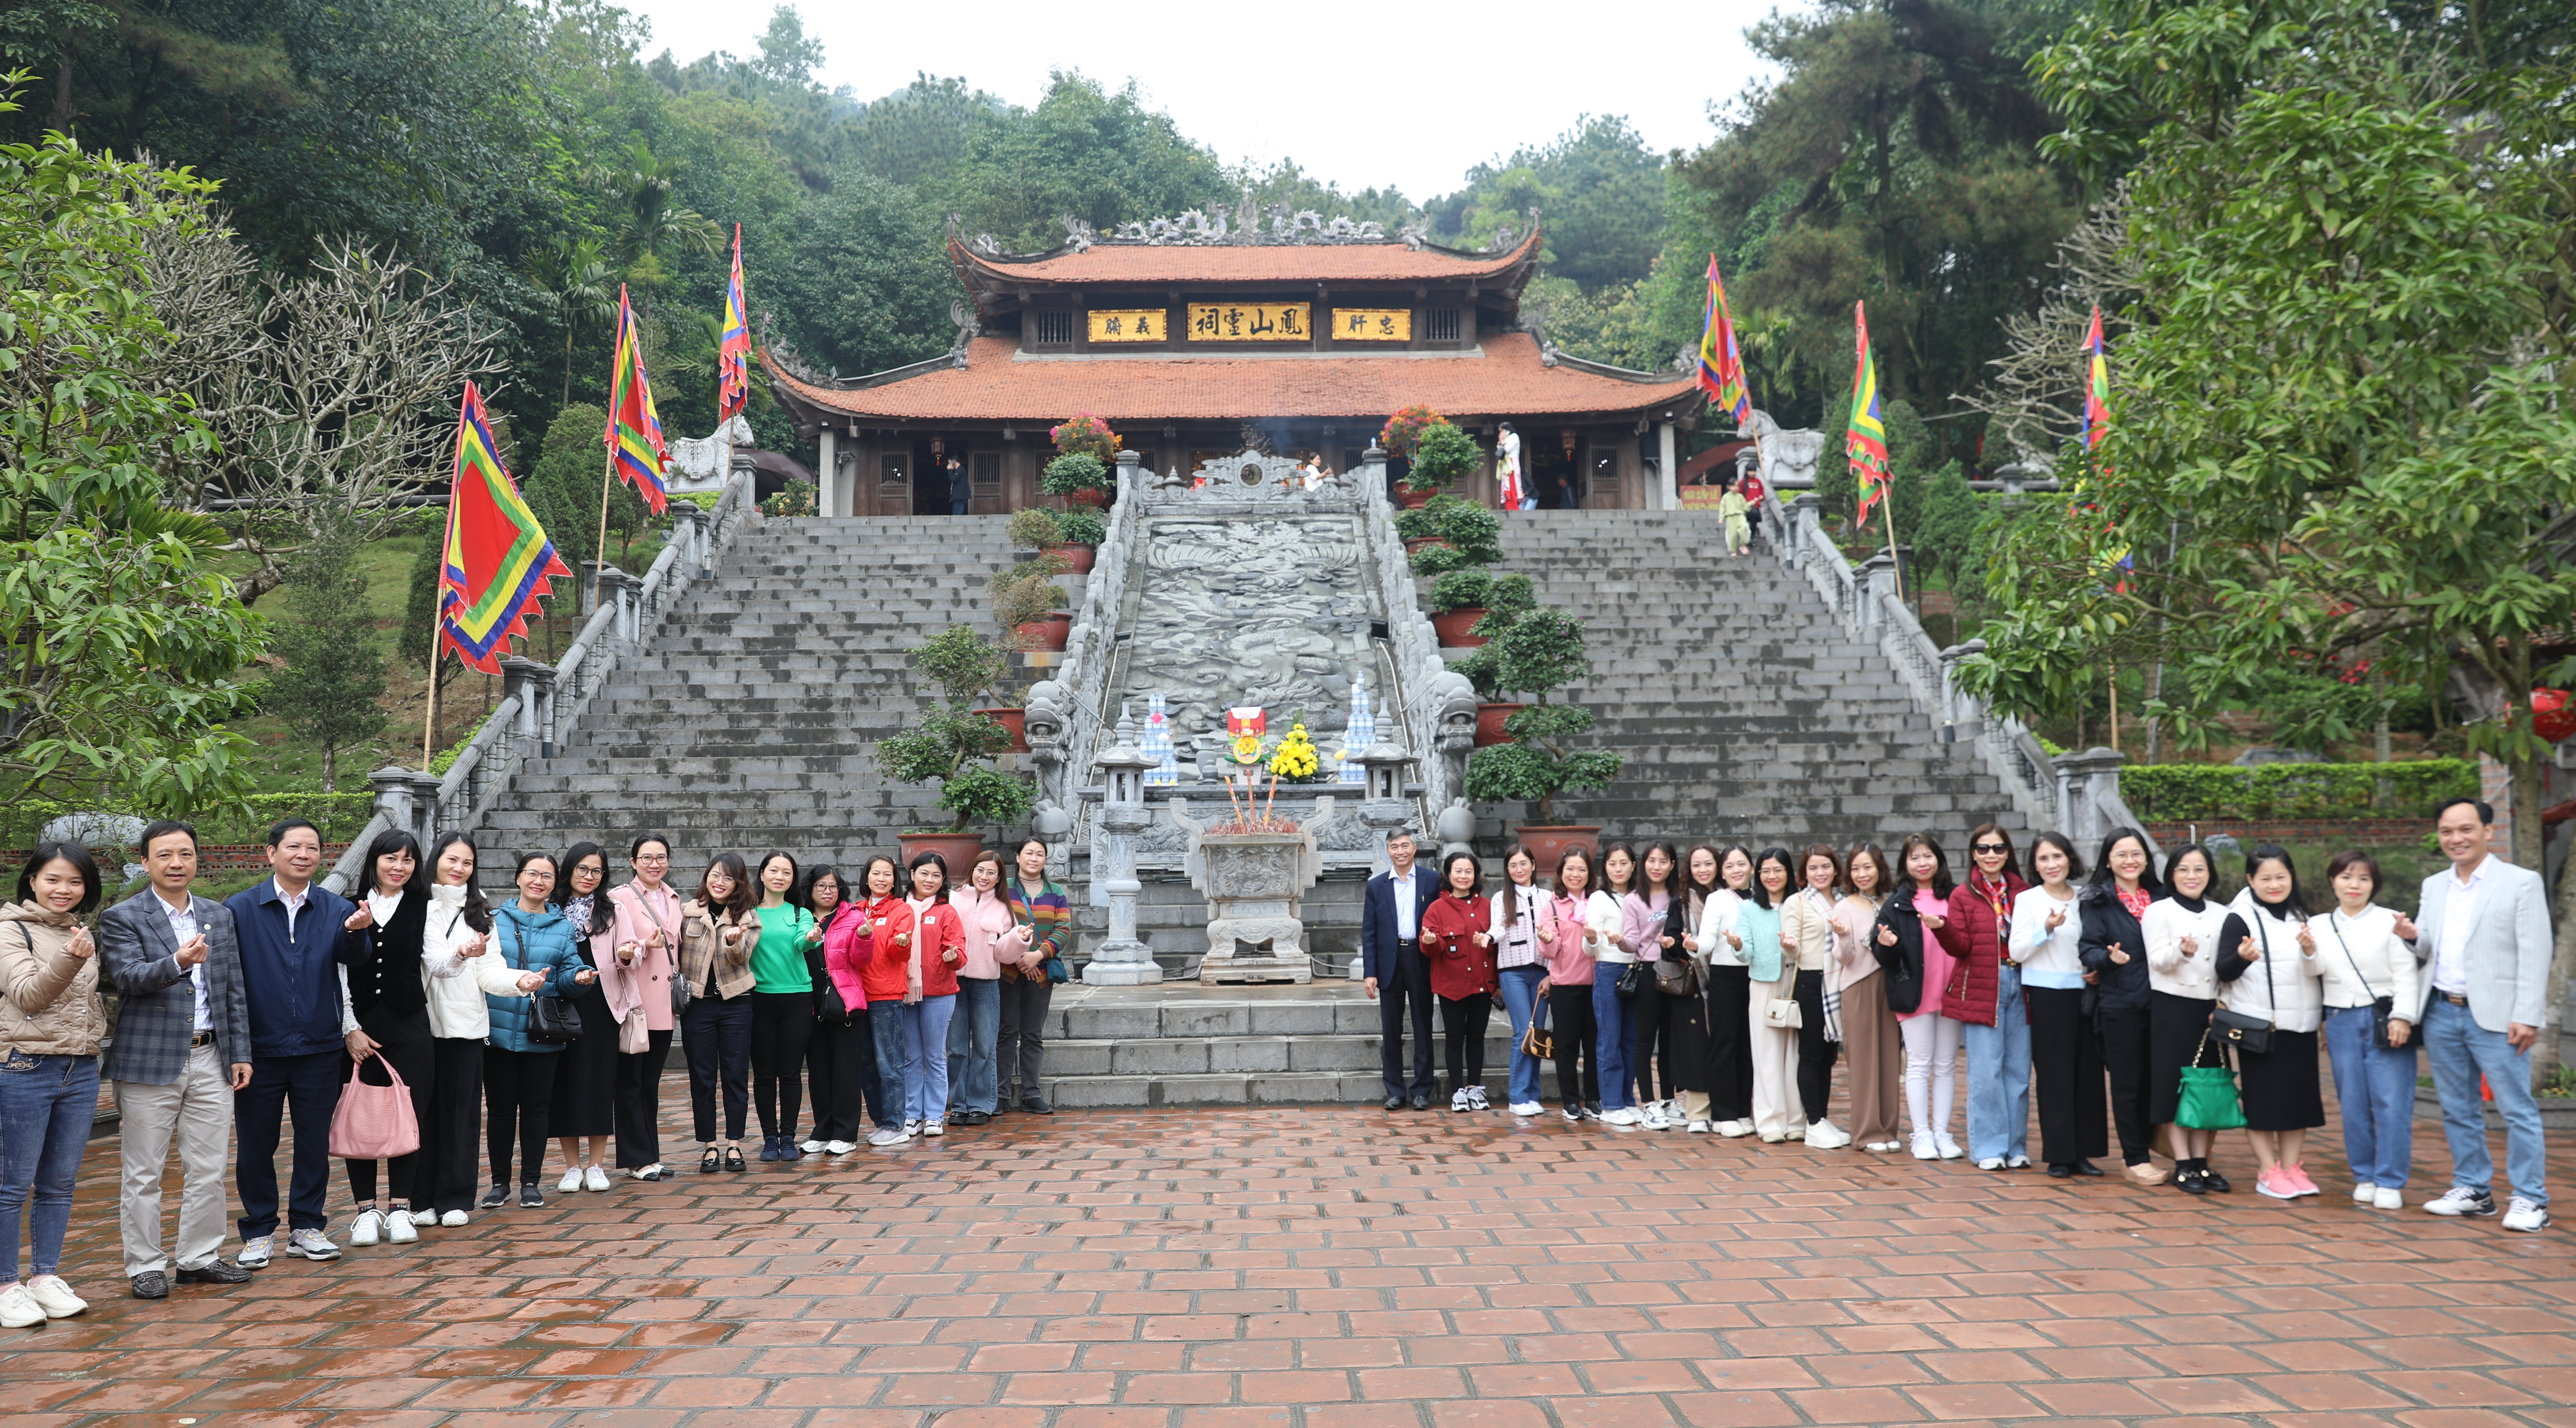 Đoàn chụp ảnh lưu niệm tại đền thờ Chu Văn An.